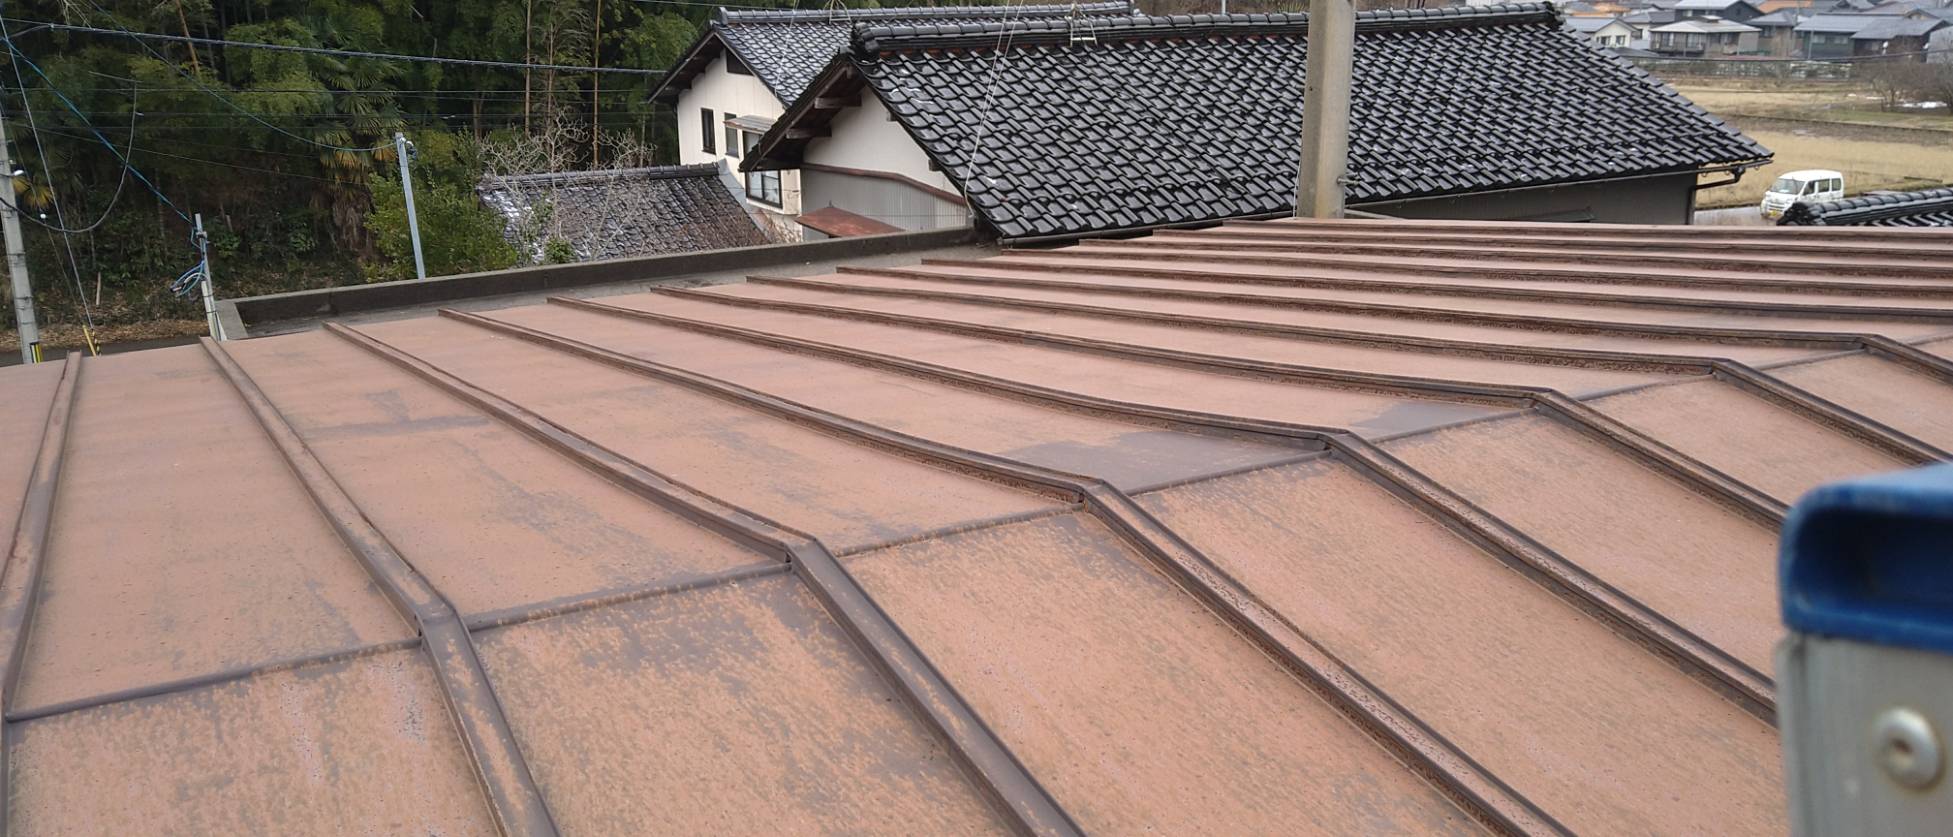 金沢市で瓦棒屋根→屋根カバー工事。雨漏りや屋根破損からのご相談でした